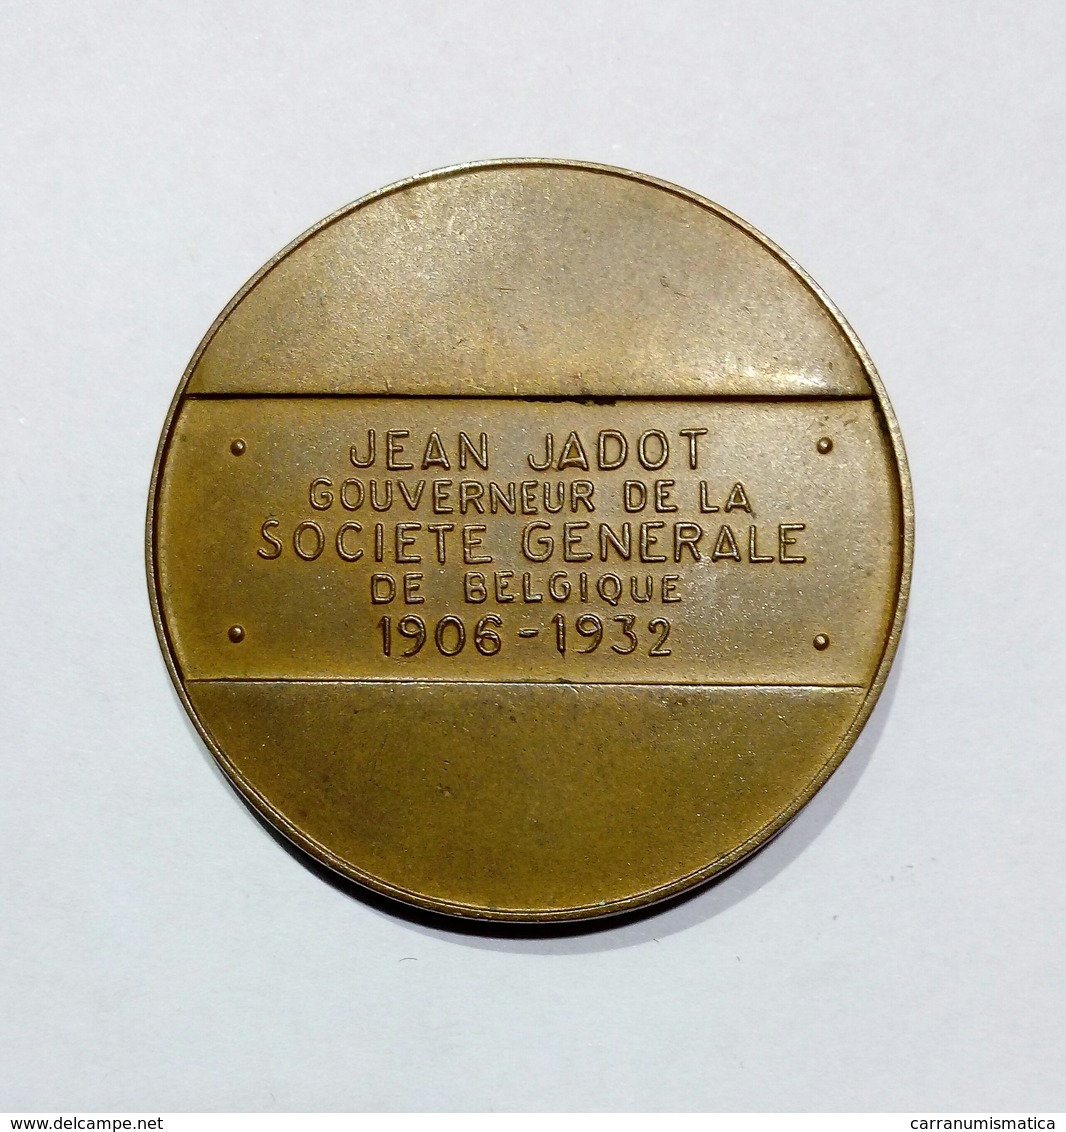 BELGIE / BELGIQUE - MEDAILLE J. JADOT Gouverneur De La Societé Génerale De Belgique (1906-1932) Bronze / 34mm - Unternehmen